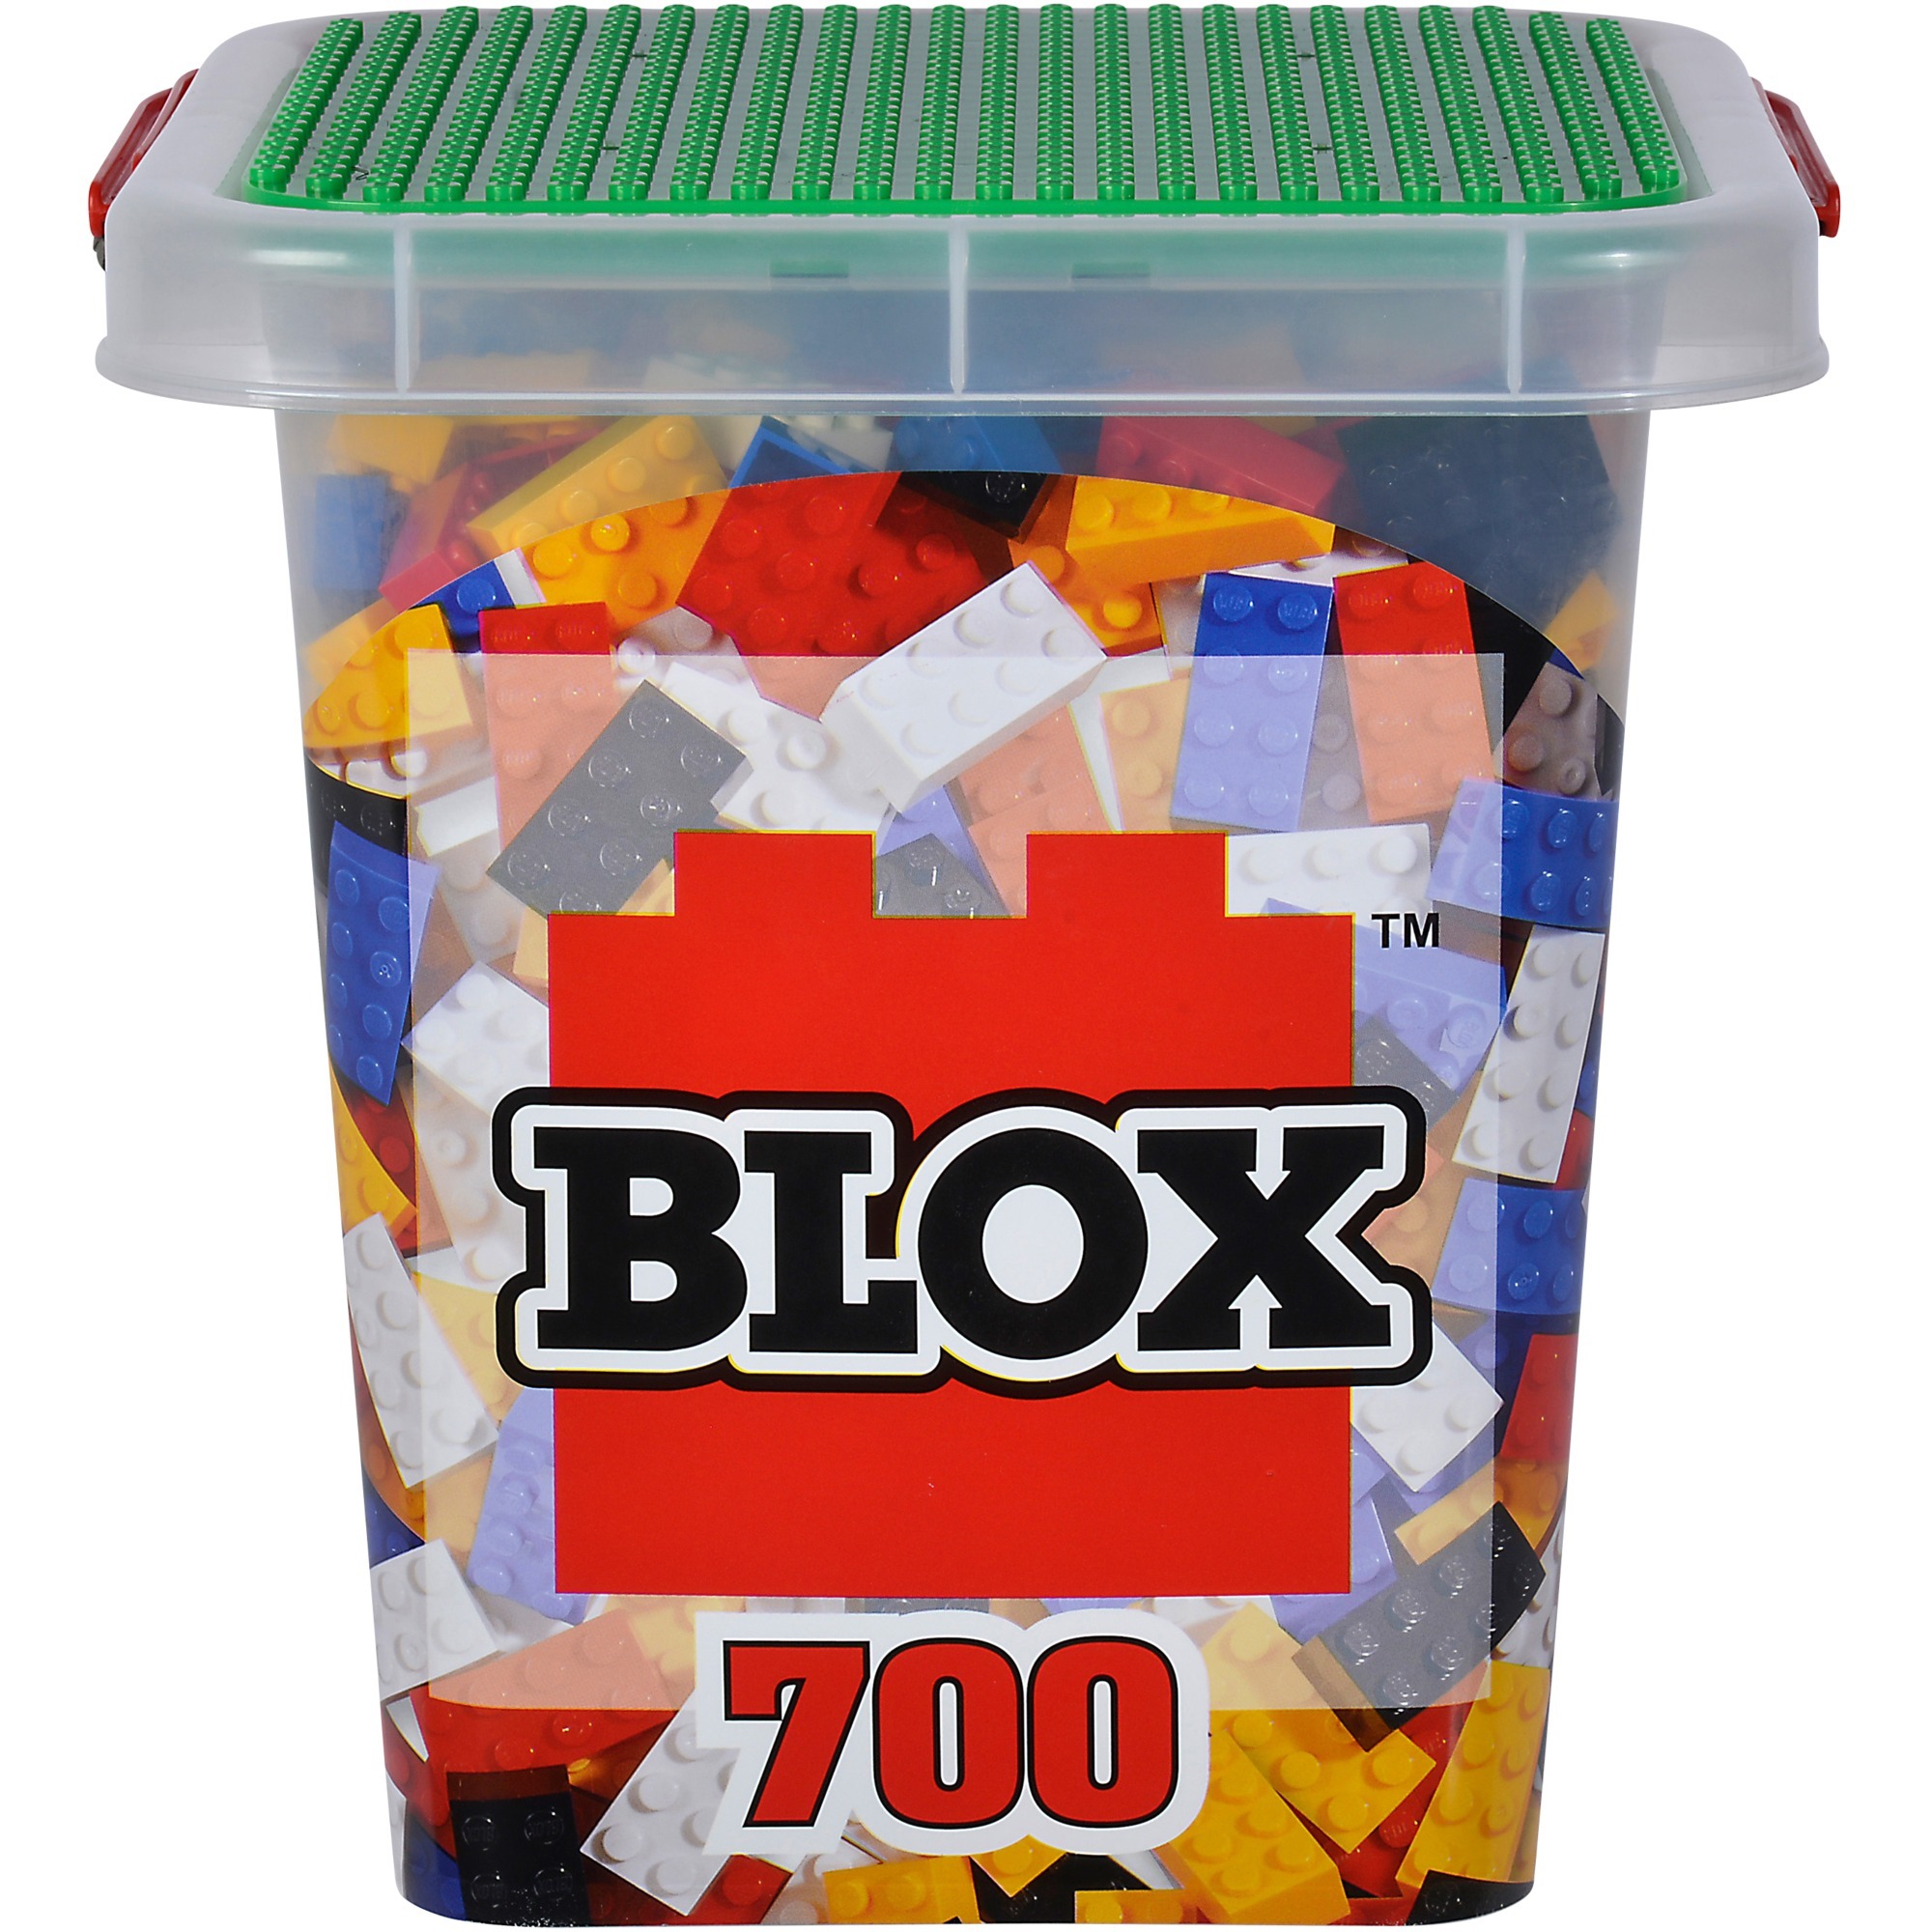 Image of Alternate - Blox Eimer 700 8er Steine, Konstruktionsspielzeug online einkaufen bei Alternate